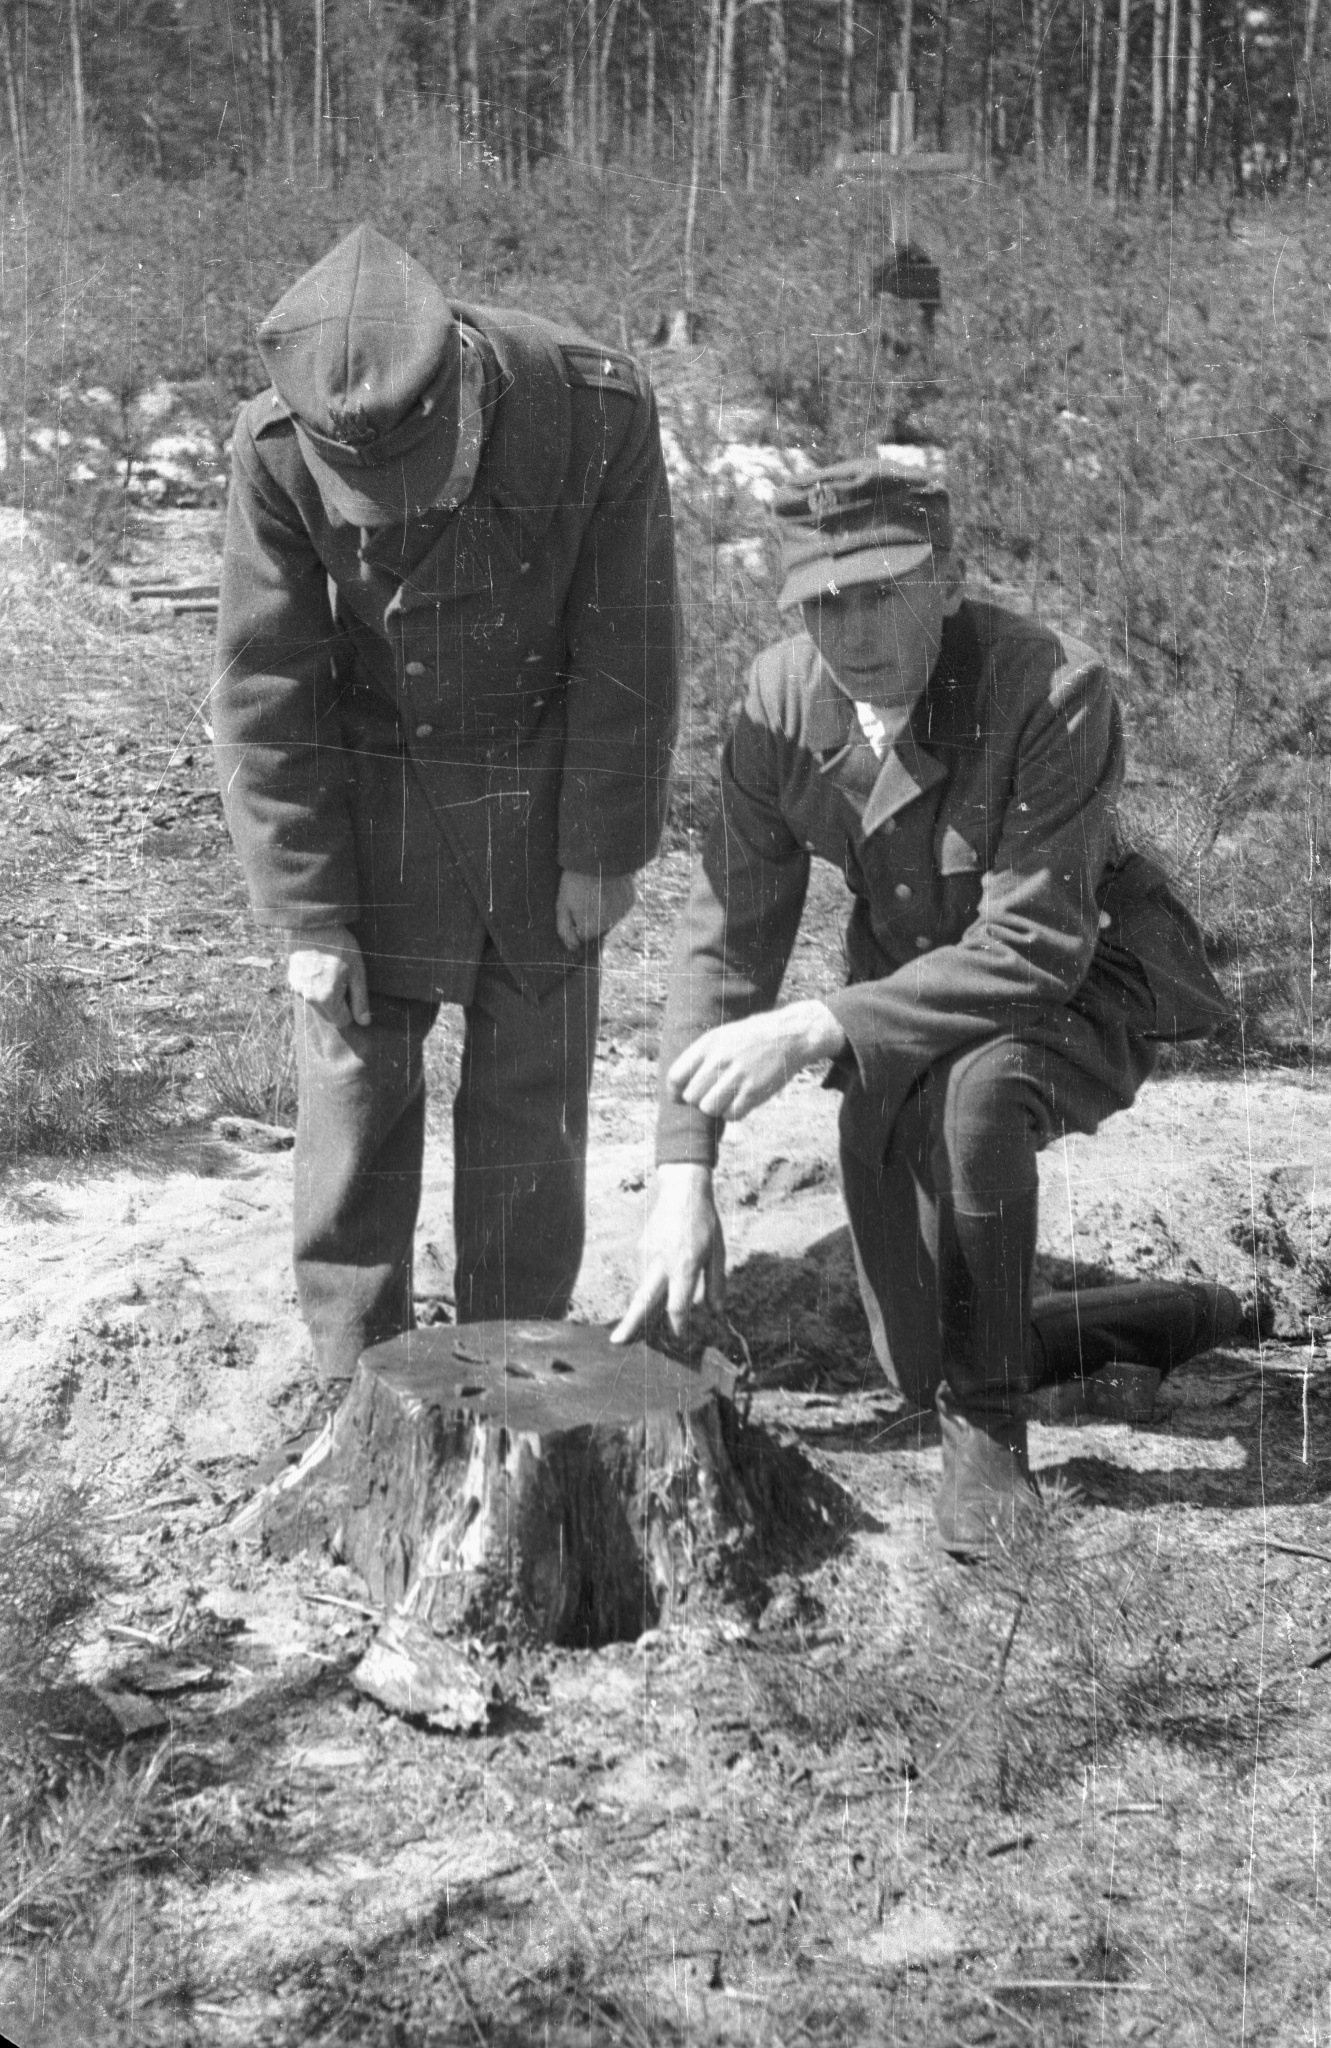 Leśniczy Adam Herbański pokazuje pień drzewa z powbijanymi łuskami z broni, którymi w 1940 roku oznaczył położenie zbiorowej mogiły, Palmiry, 18 kwietnia 1946 r.